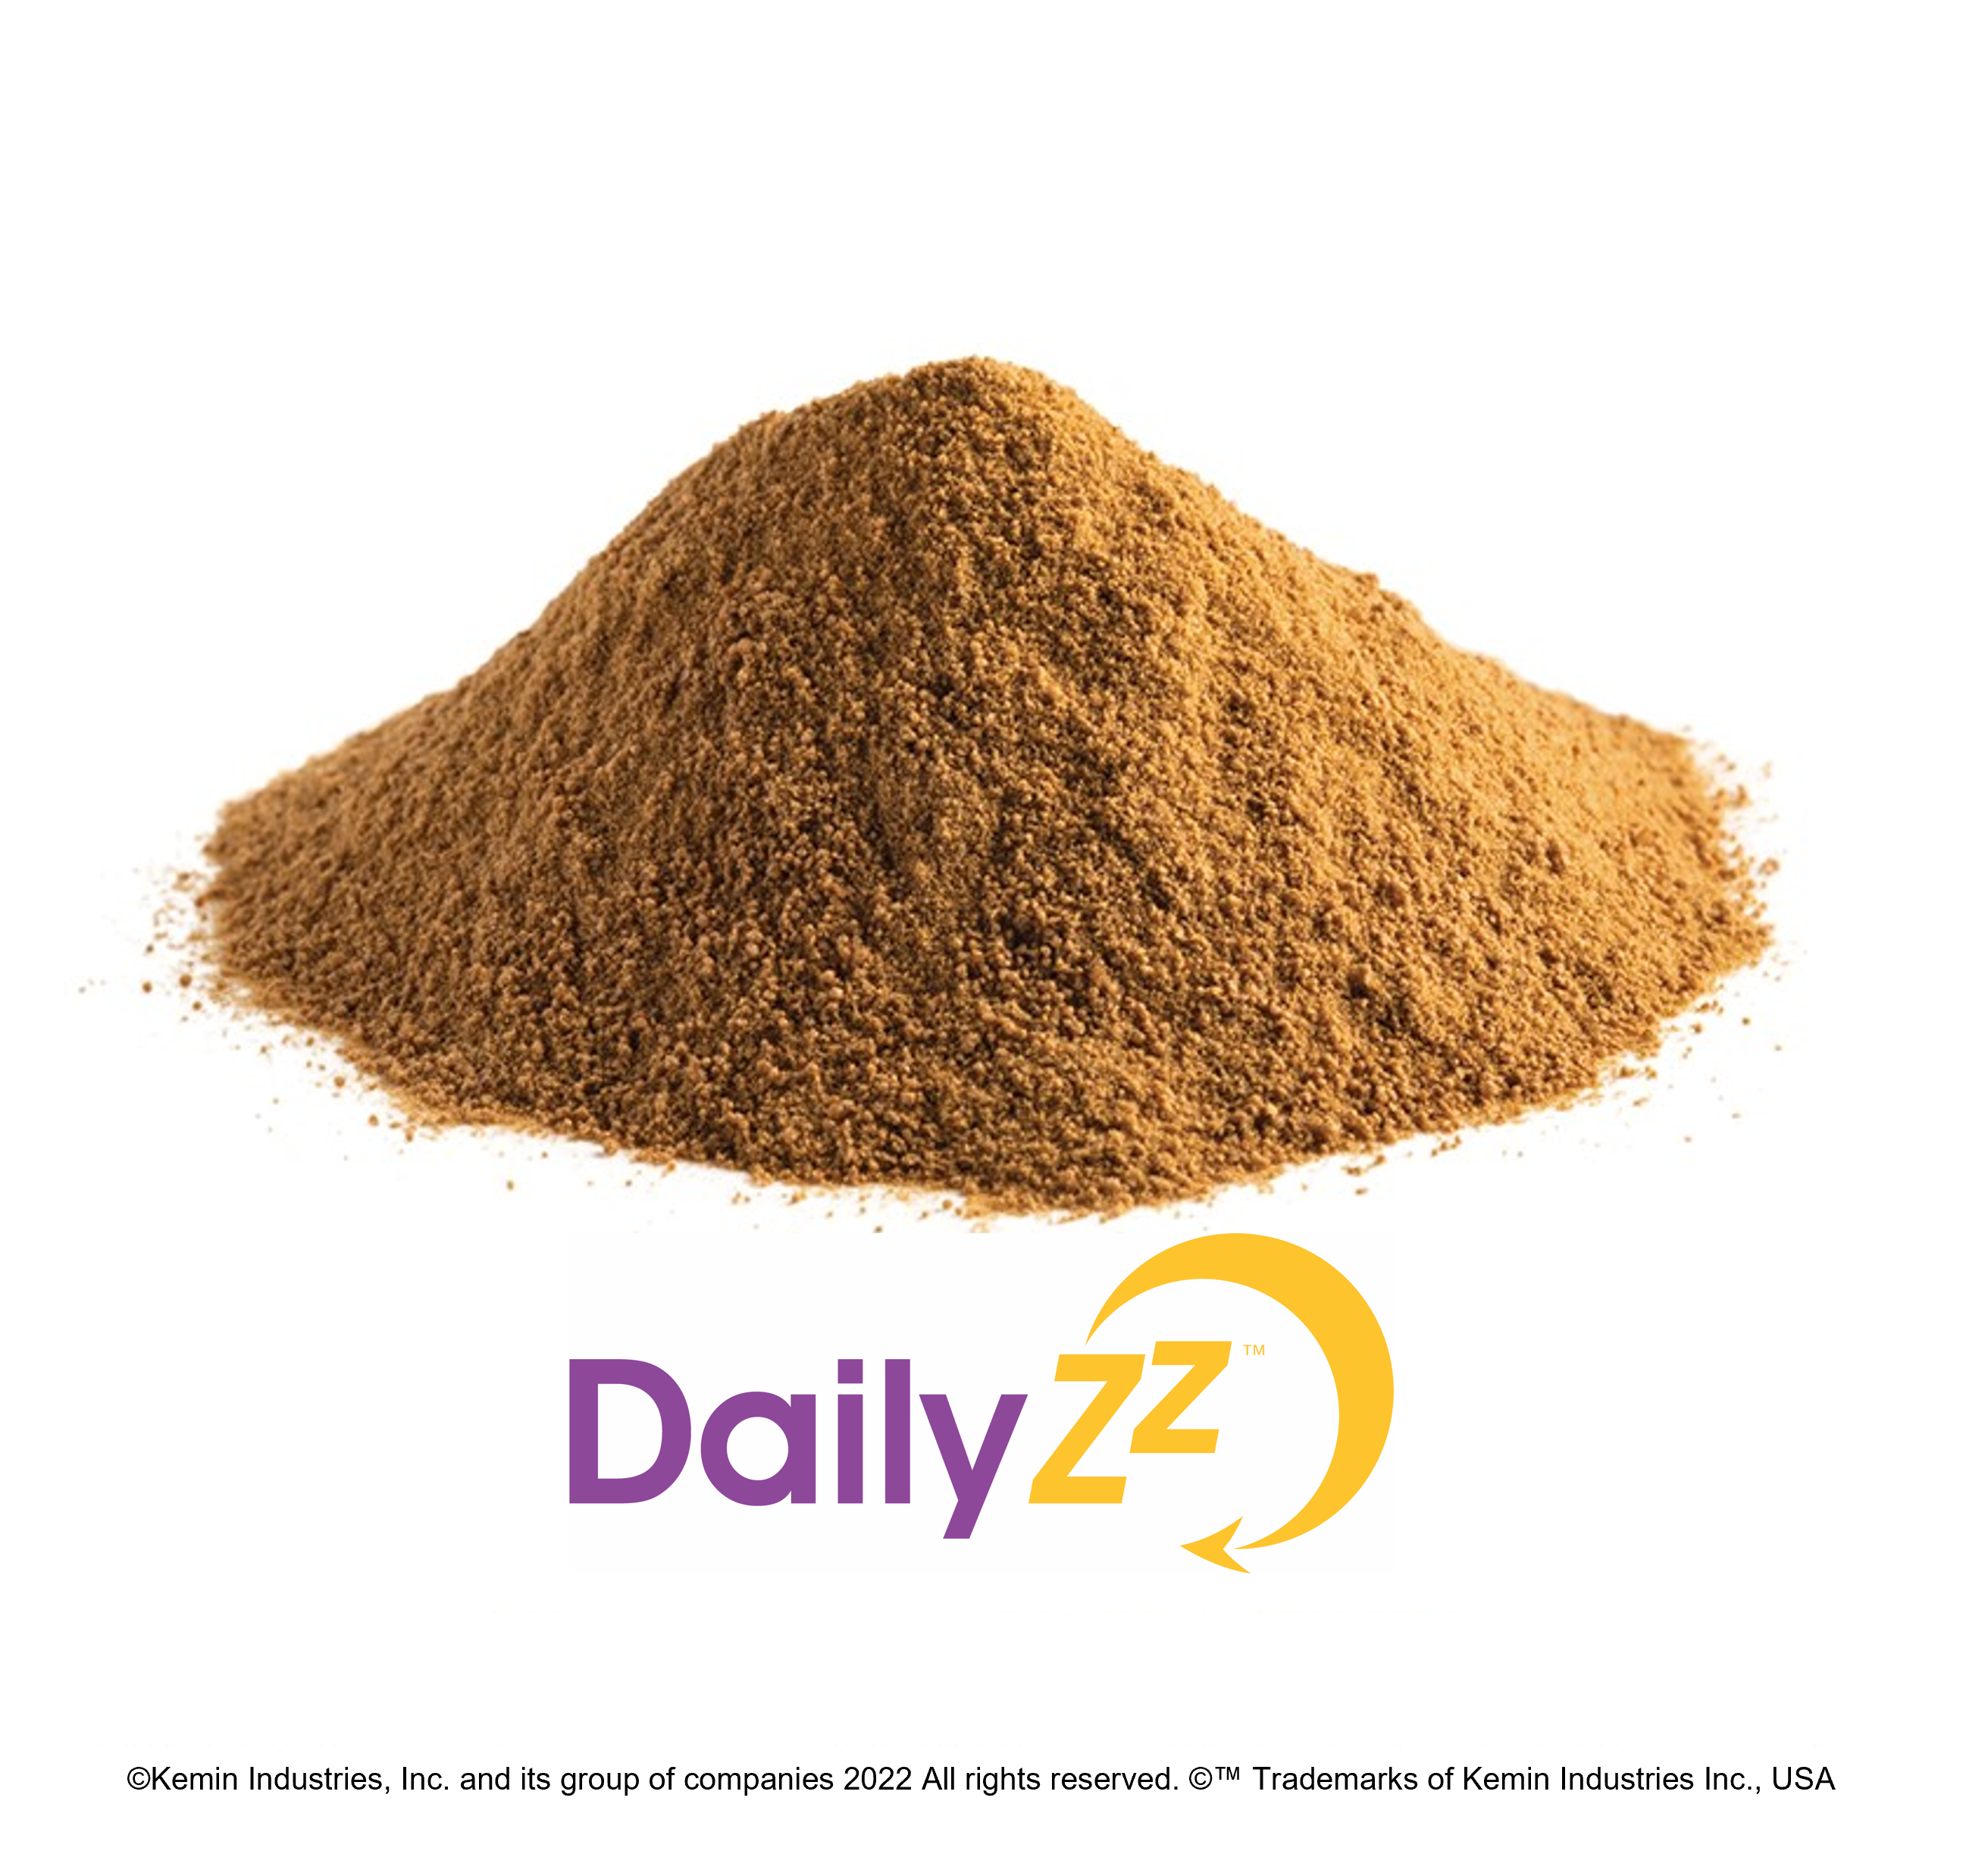 DailyZz ingredient